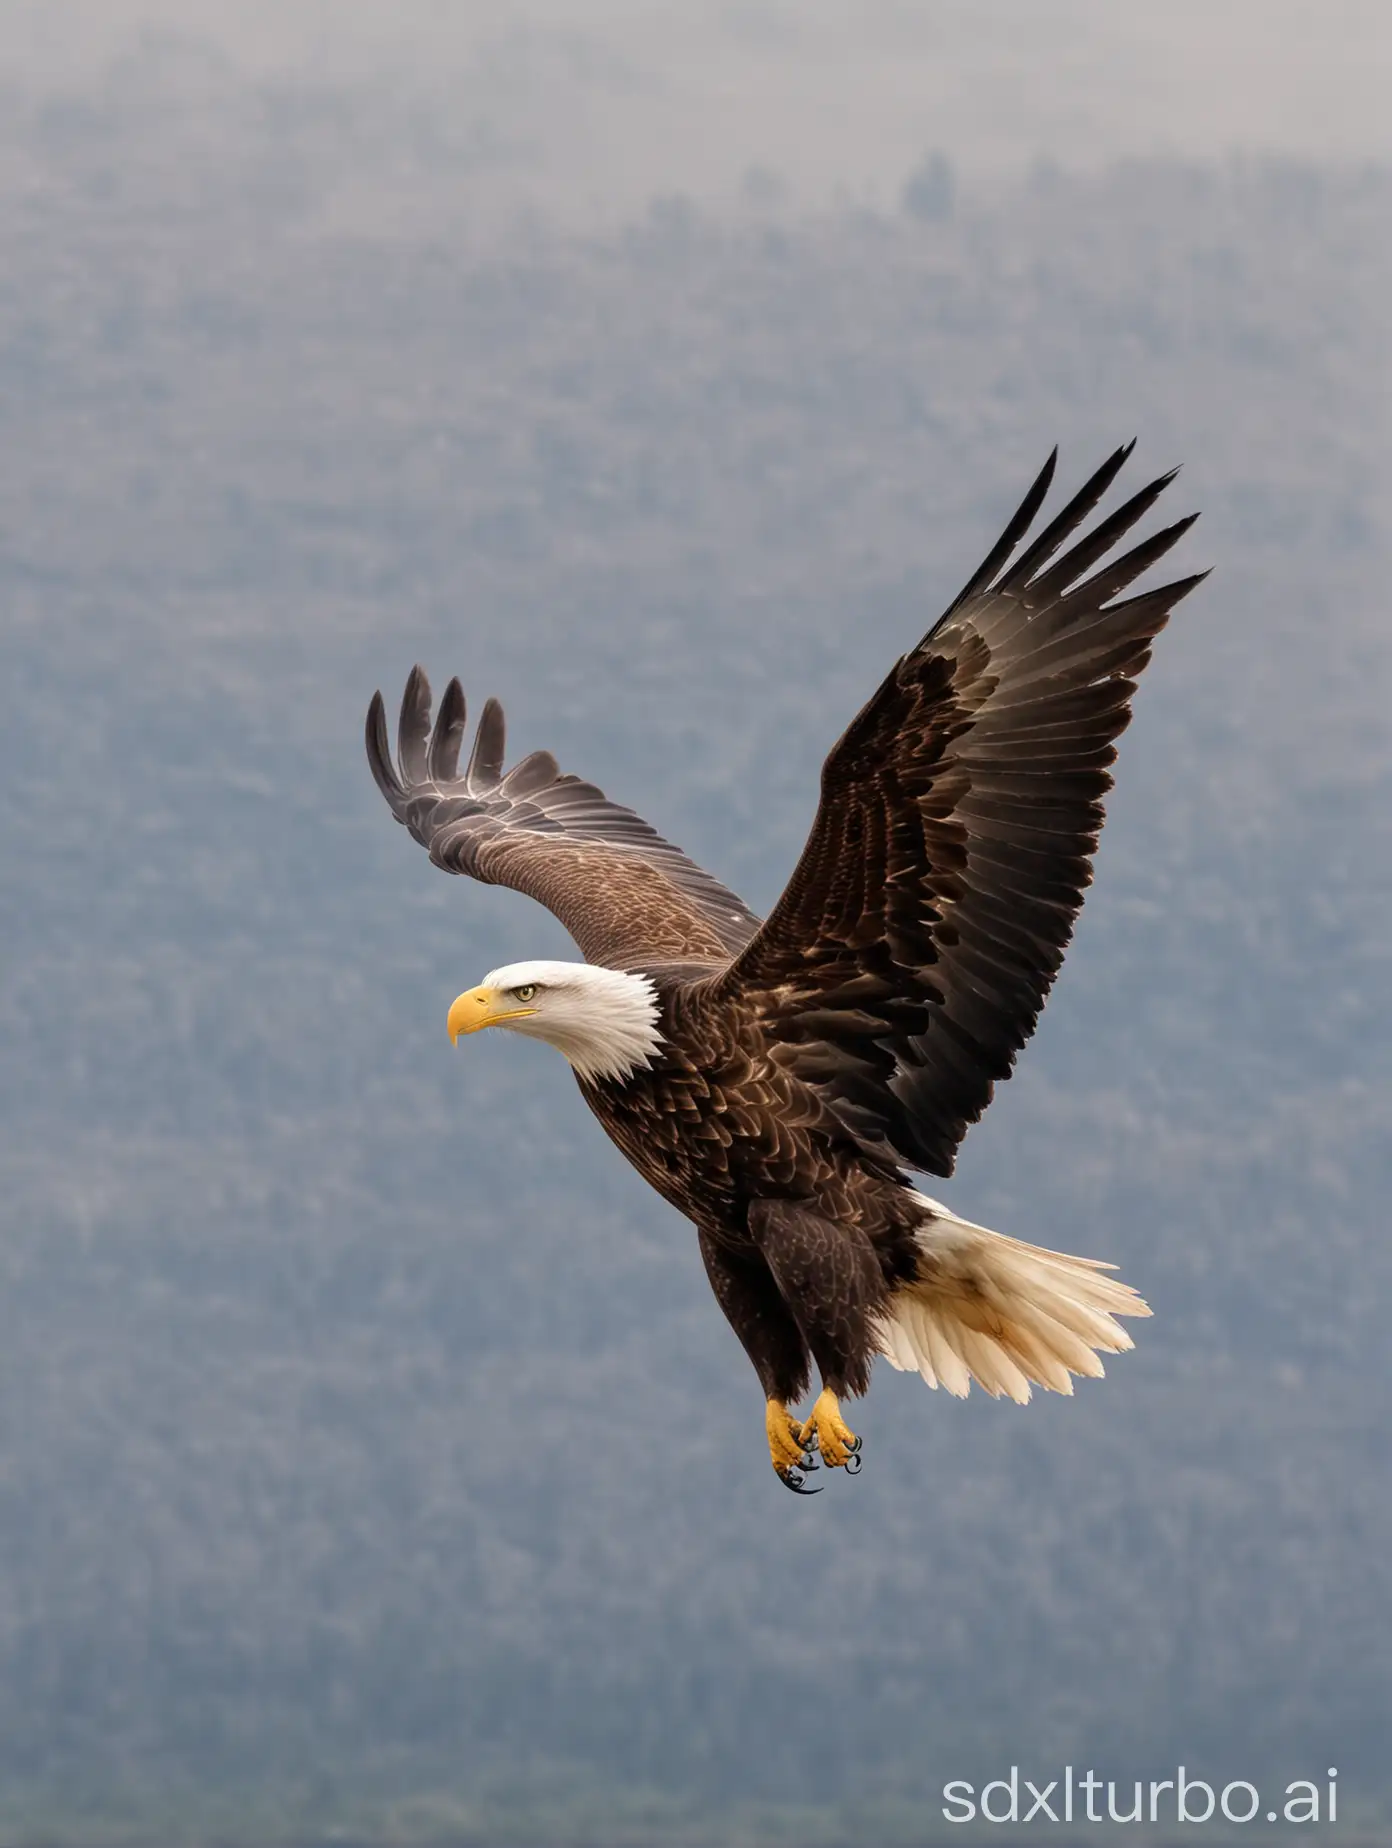 The eagle soars